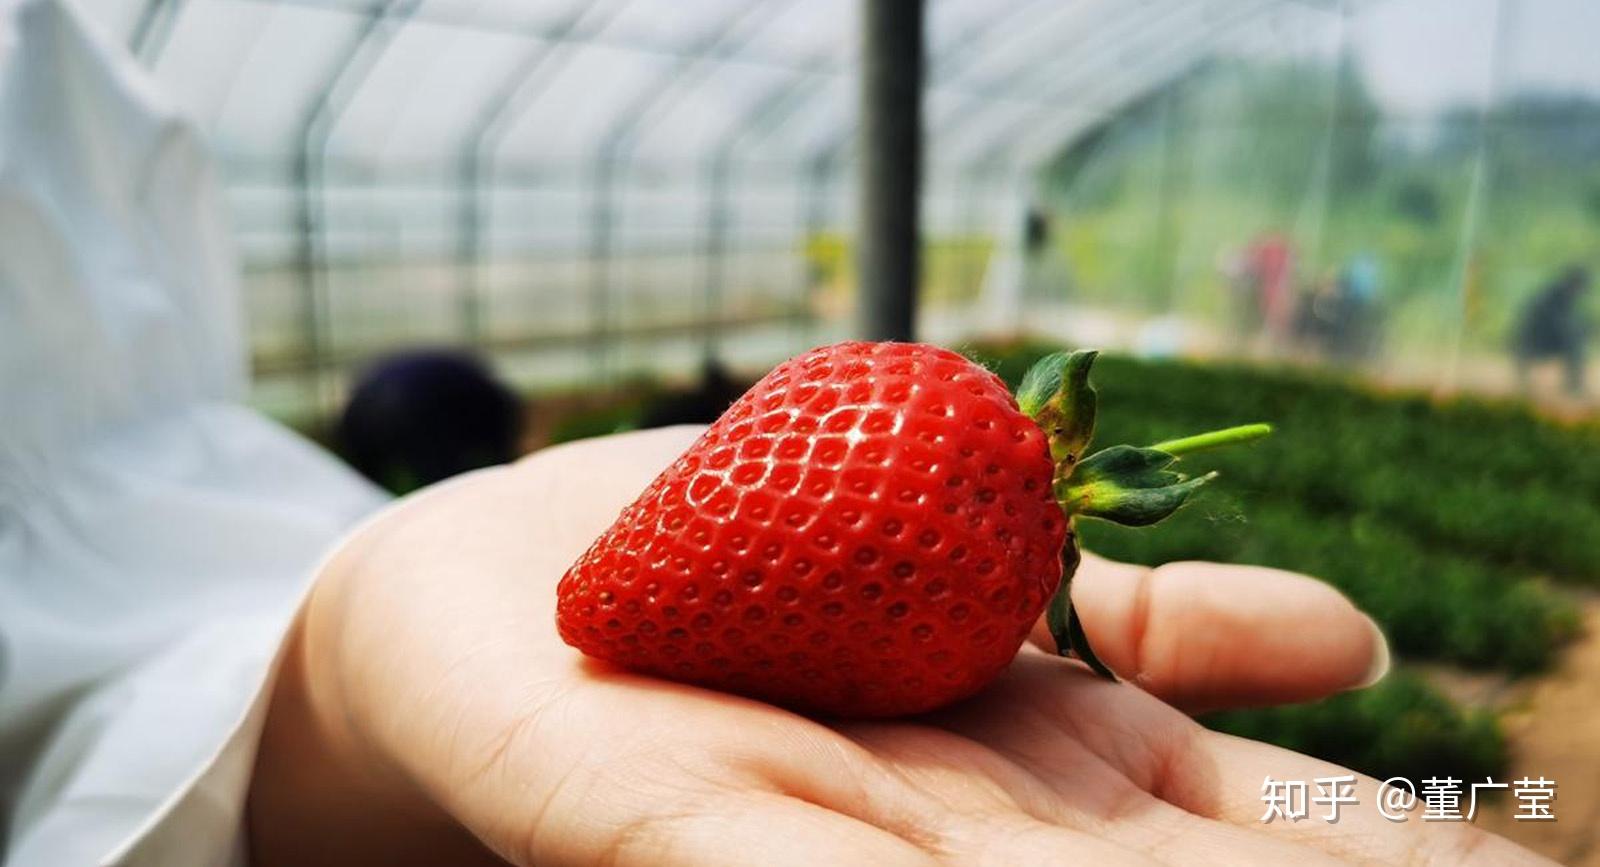 吃的草莓是花托还是果实？ | 说明书网